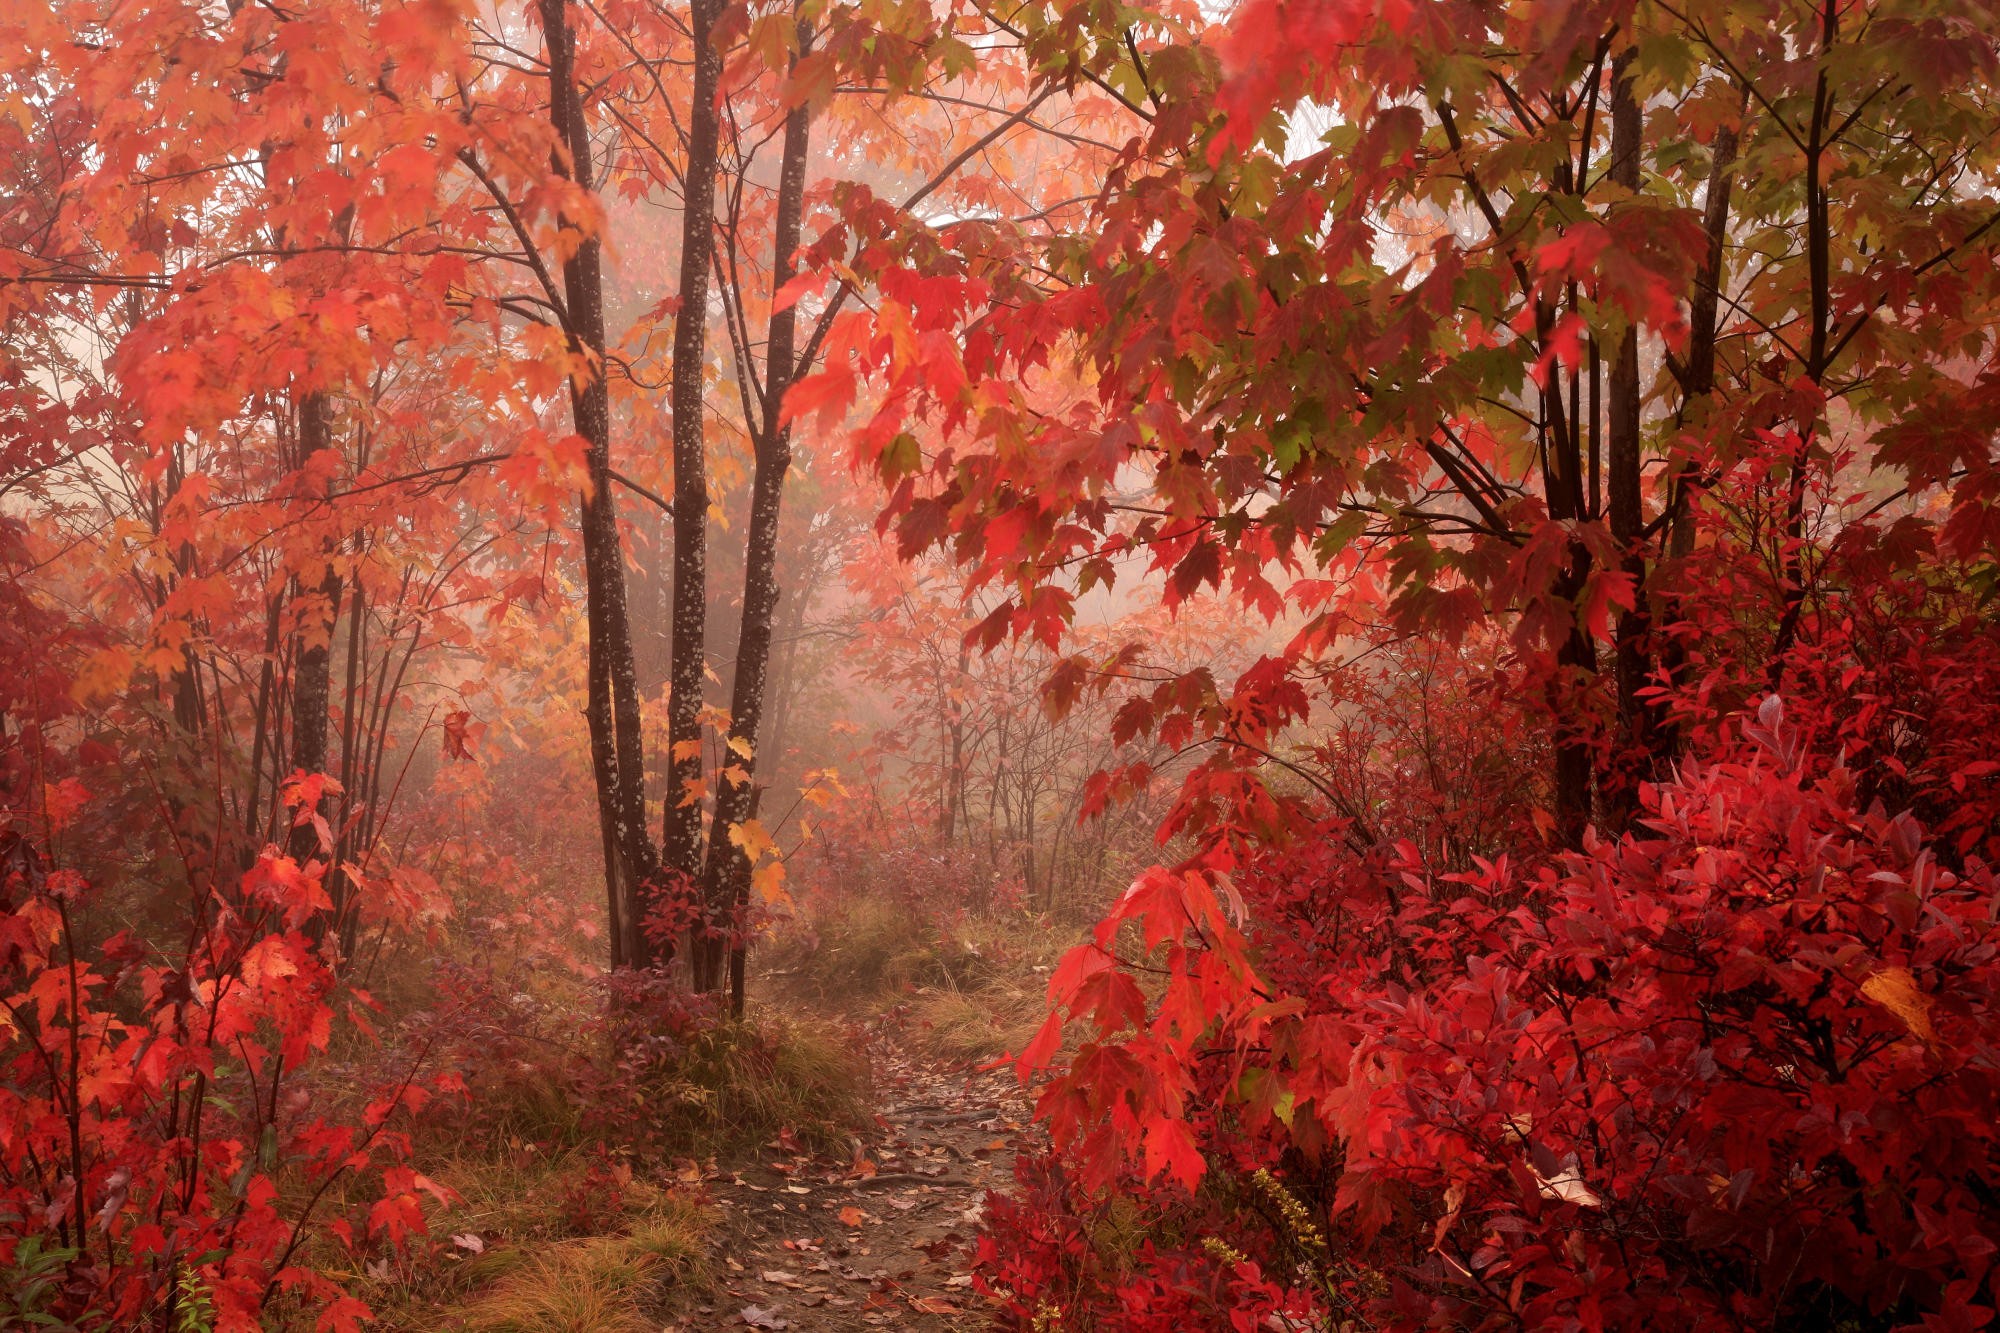 Vibrant autumn foliage in a peaceful natural setting.